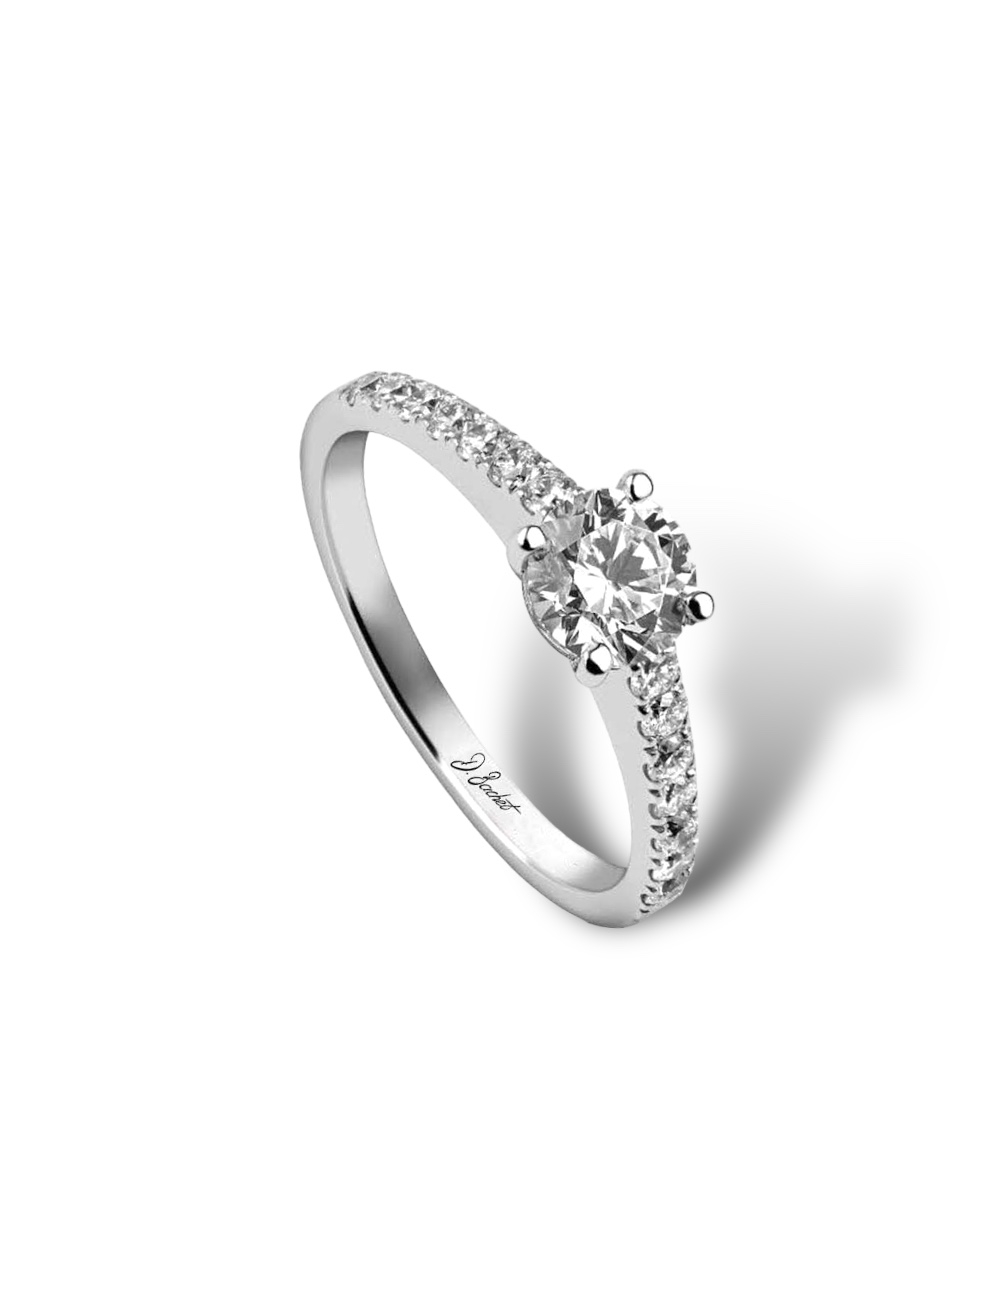 Bague de fiançailles en platine, 7 diamants blancs, diamant central 0.50 ct, moderne et intemporelle.